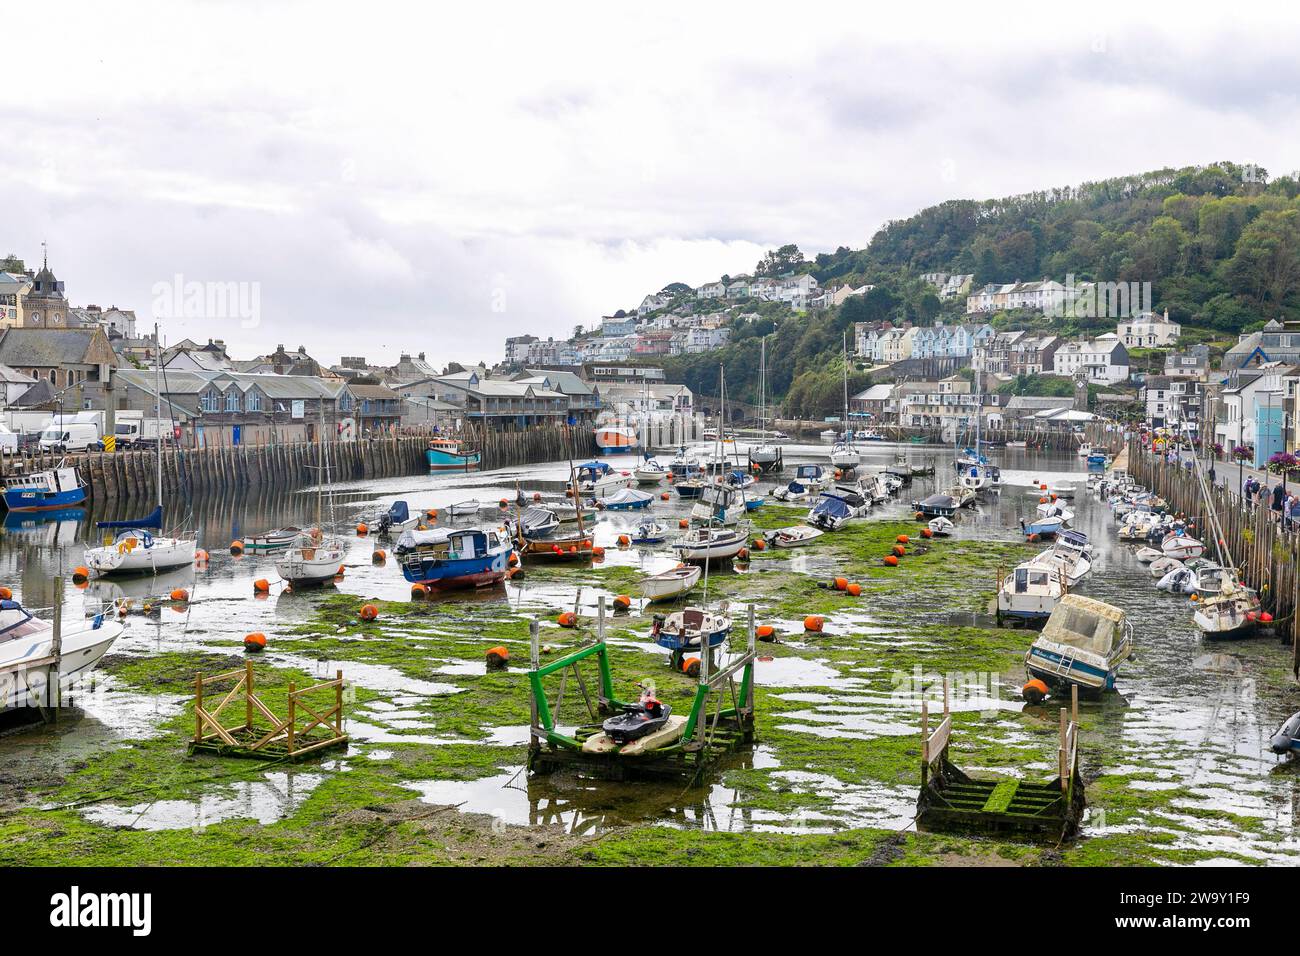 Looe Cornwall e bassa marea nel porto con barche da pesca sul fondo del mare, Inghilterra, Regno Unito, 2023 Foto Stock